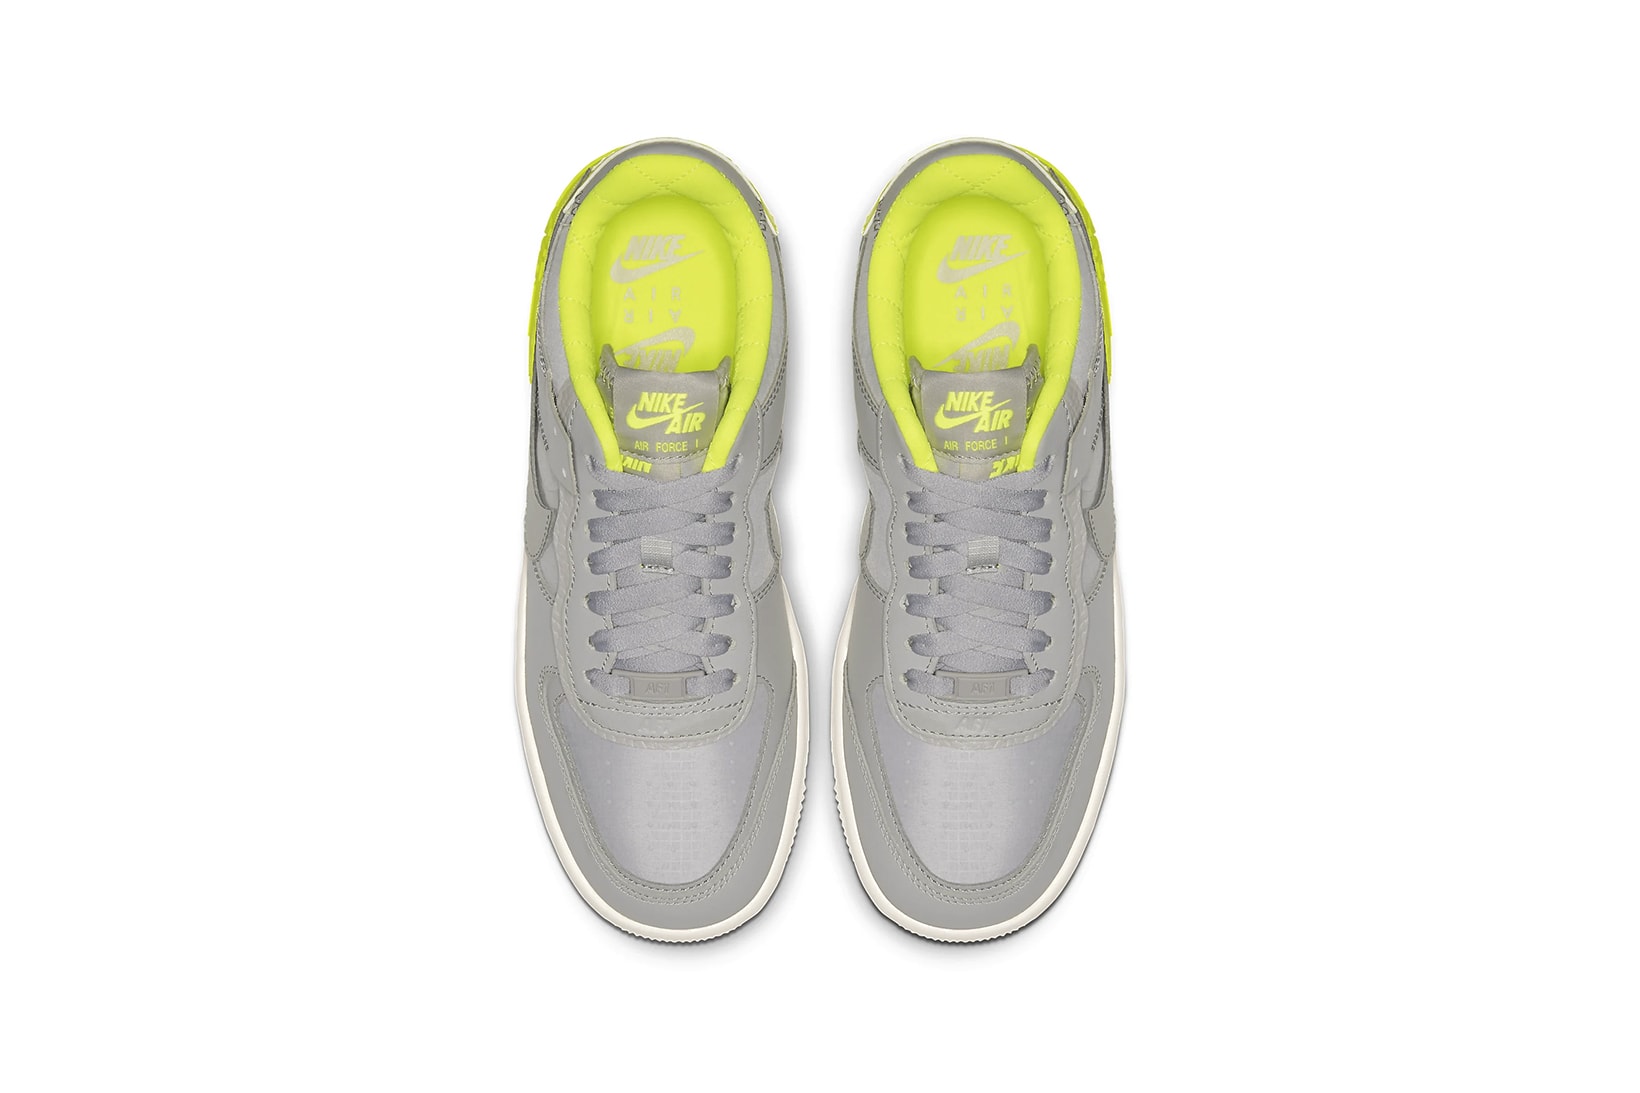 nike air force 1 shadow womens sneakers grey neon yellow shoes footwear sneakerhead 